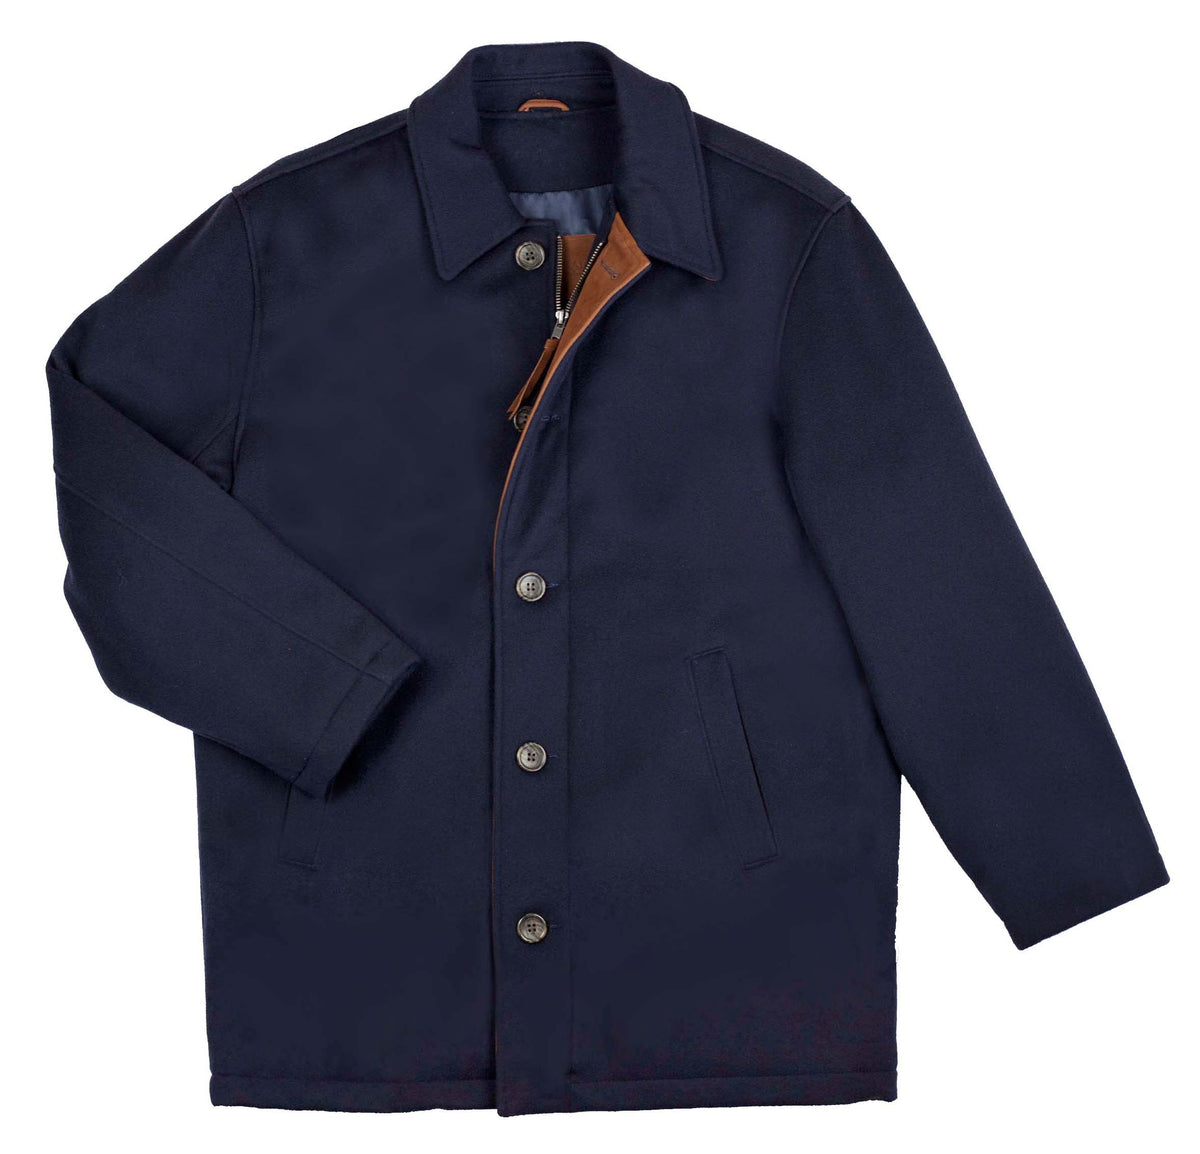 The Cambridge Jacket – Golden Bear Sportswear